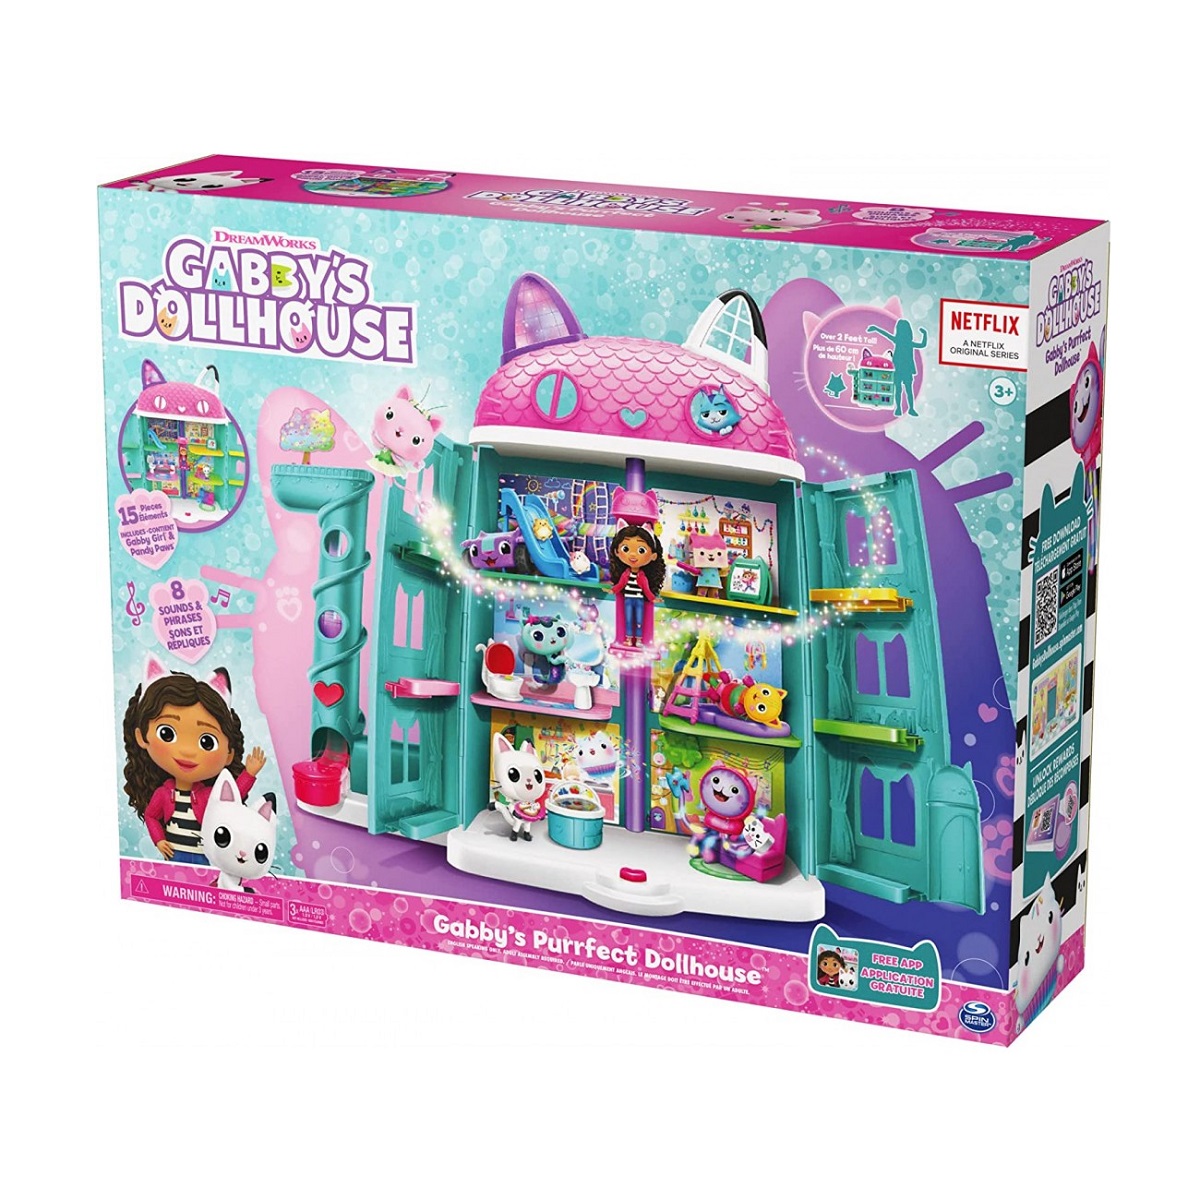 Set Gabby's Dollhouse Casa con Accesorios - 985430